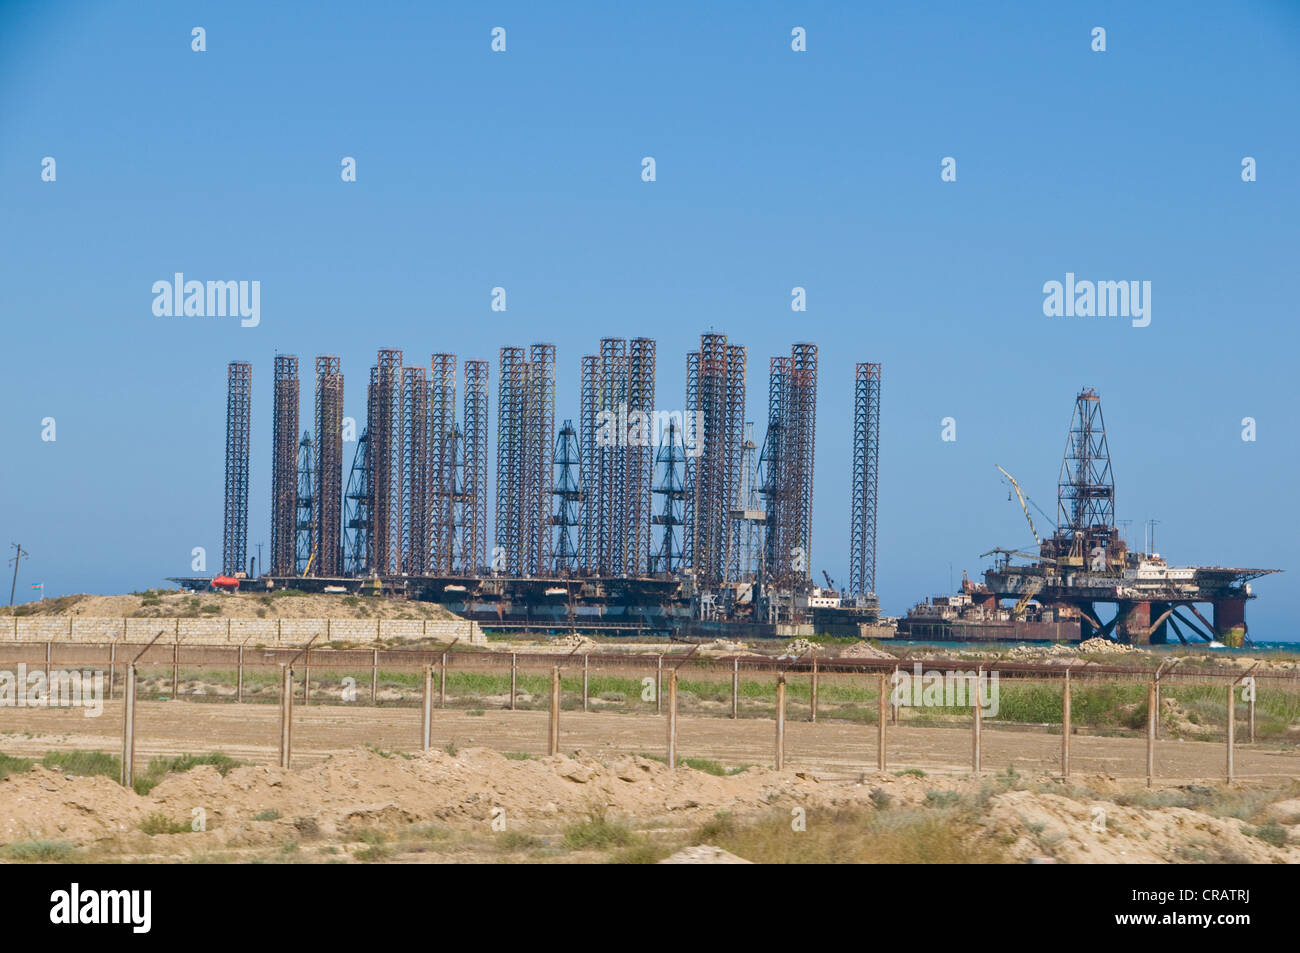 L'industrie de l'huile sur le champ de pétrole de James Bond, l'Azerbaïdjan, au Moyen-Orient Banque D'Images